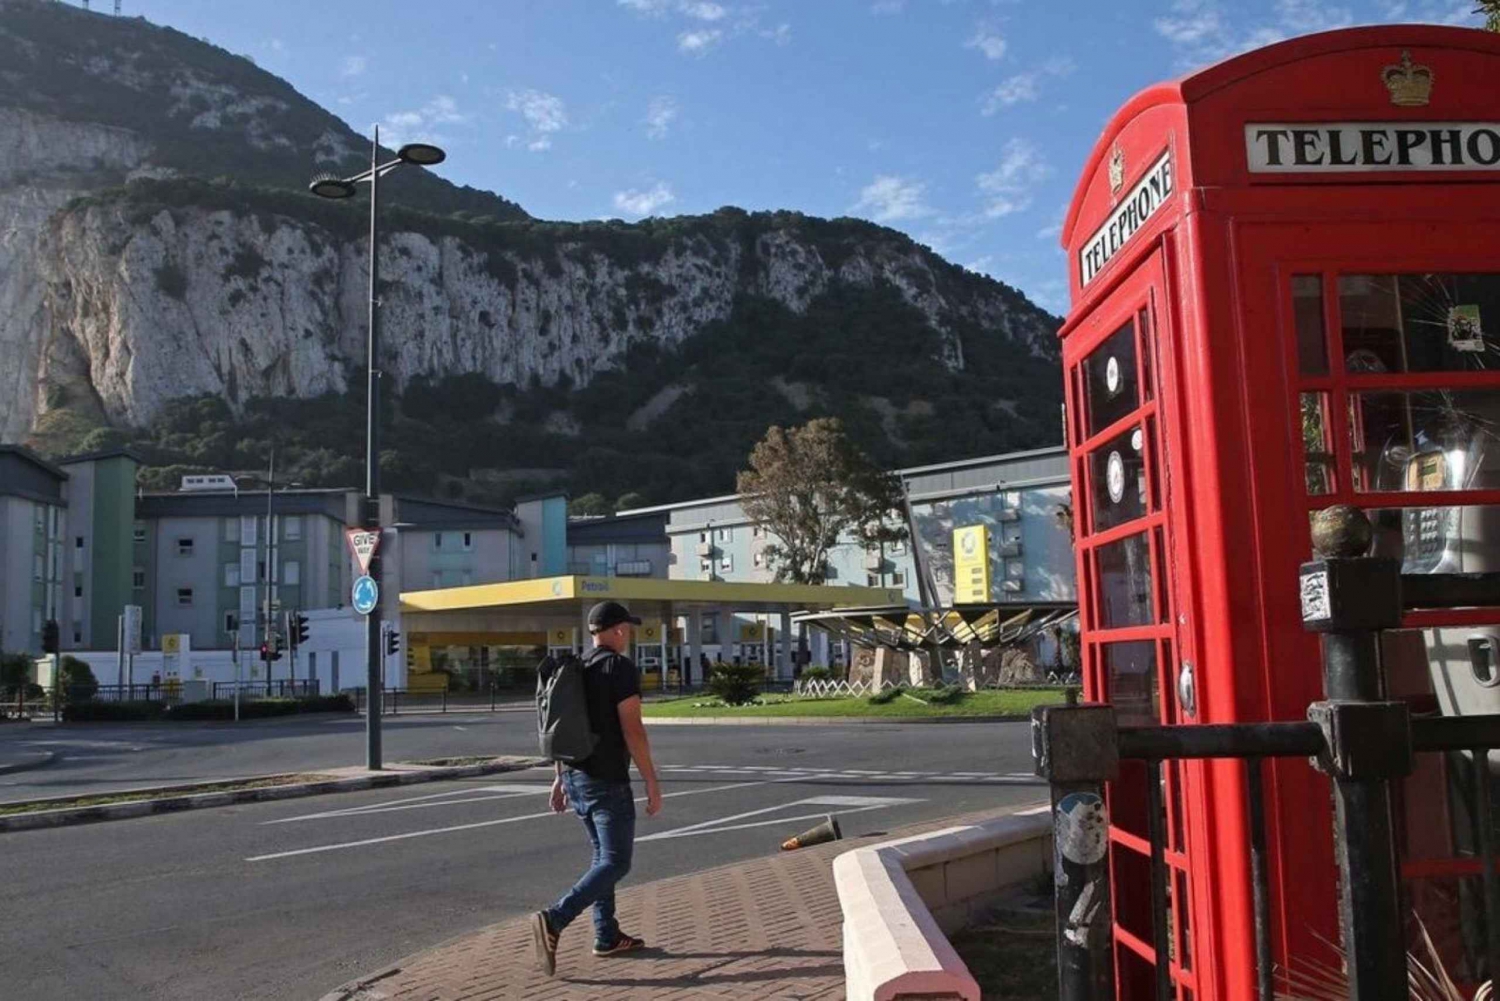 Z Malagi/Torremolinos/Benalmádena: 1-dniowa wycieczka na Gibraltar